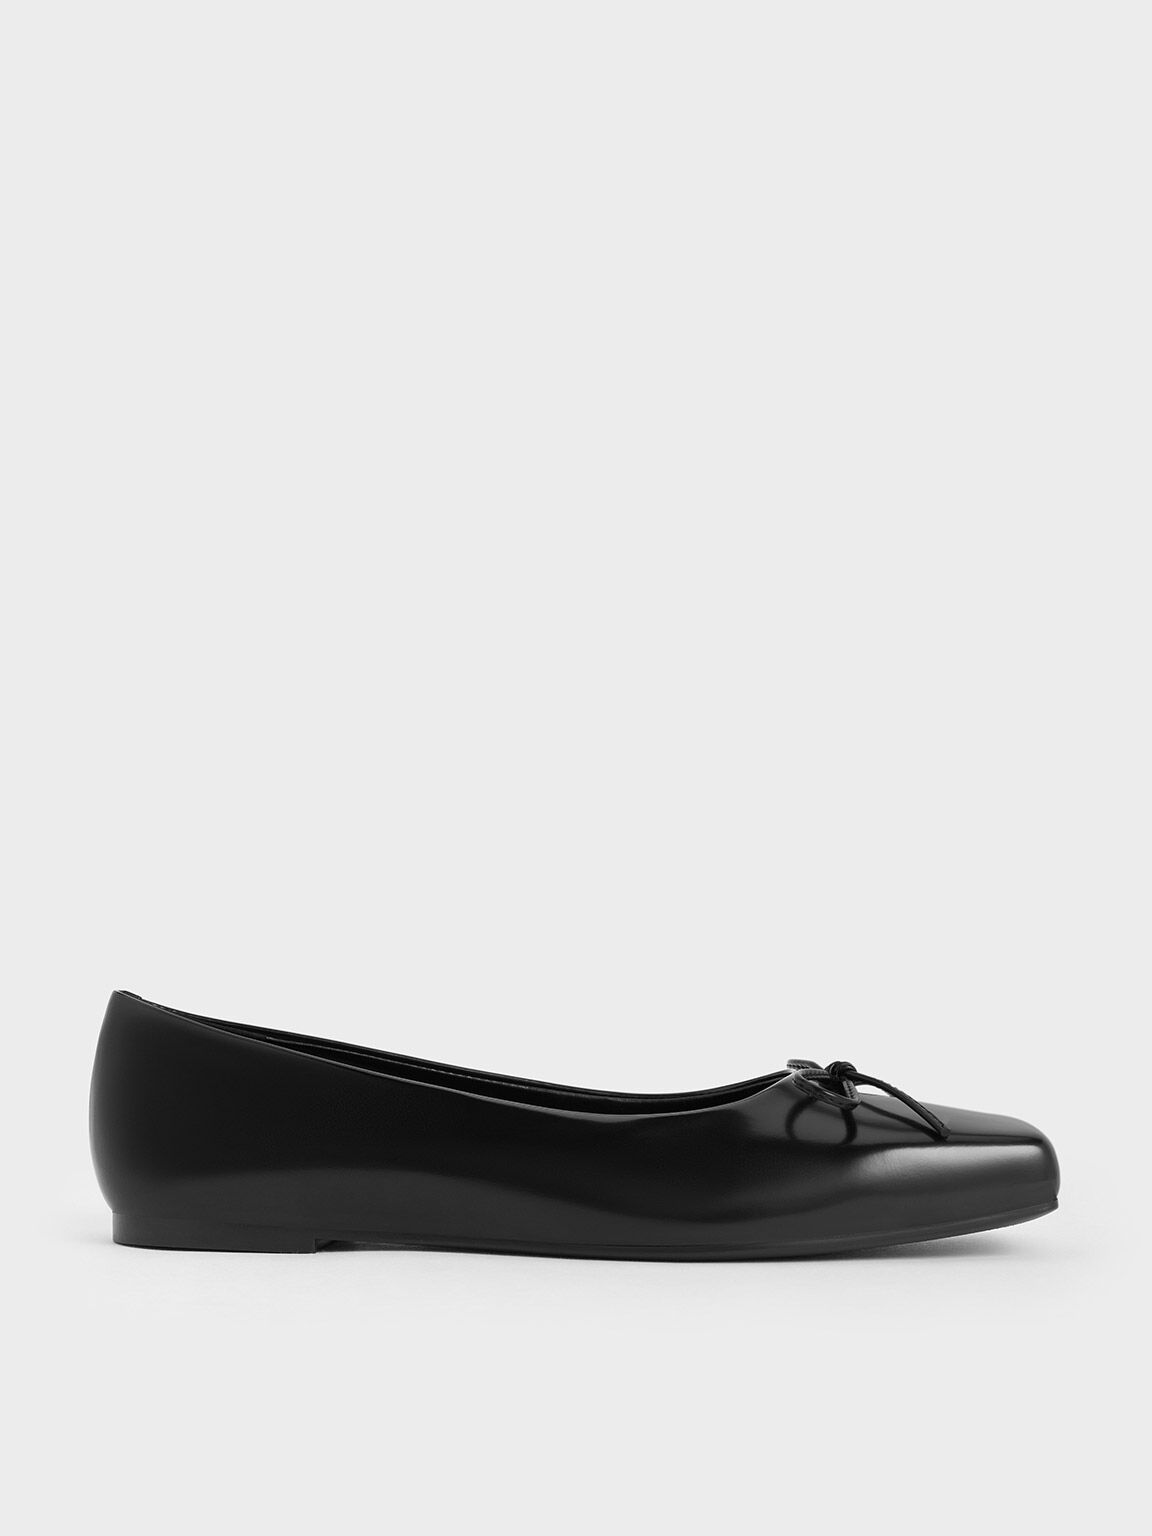 Sandal Ballet Flats Square-Toe Bow, Black Box, hi-res